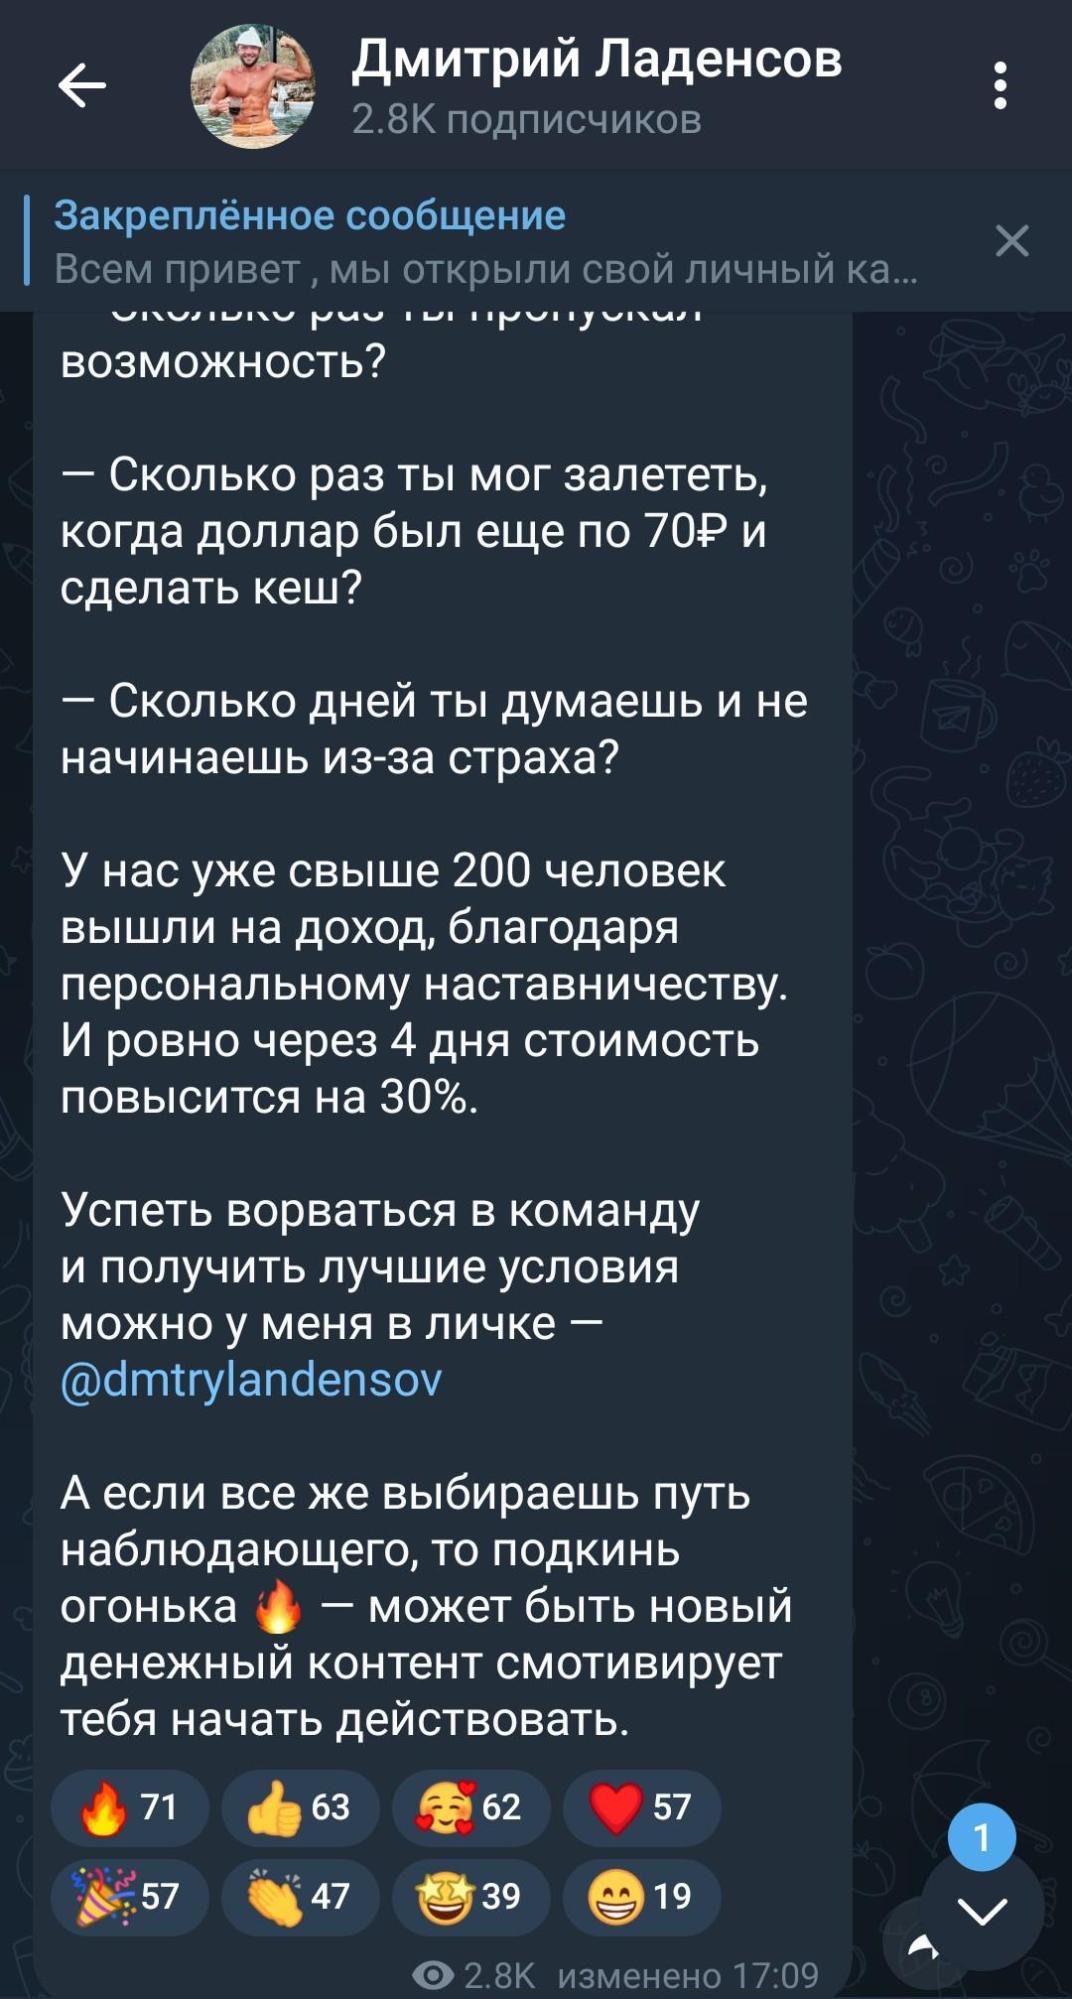 Предложение Дмитрия Ладенсова